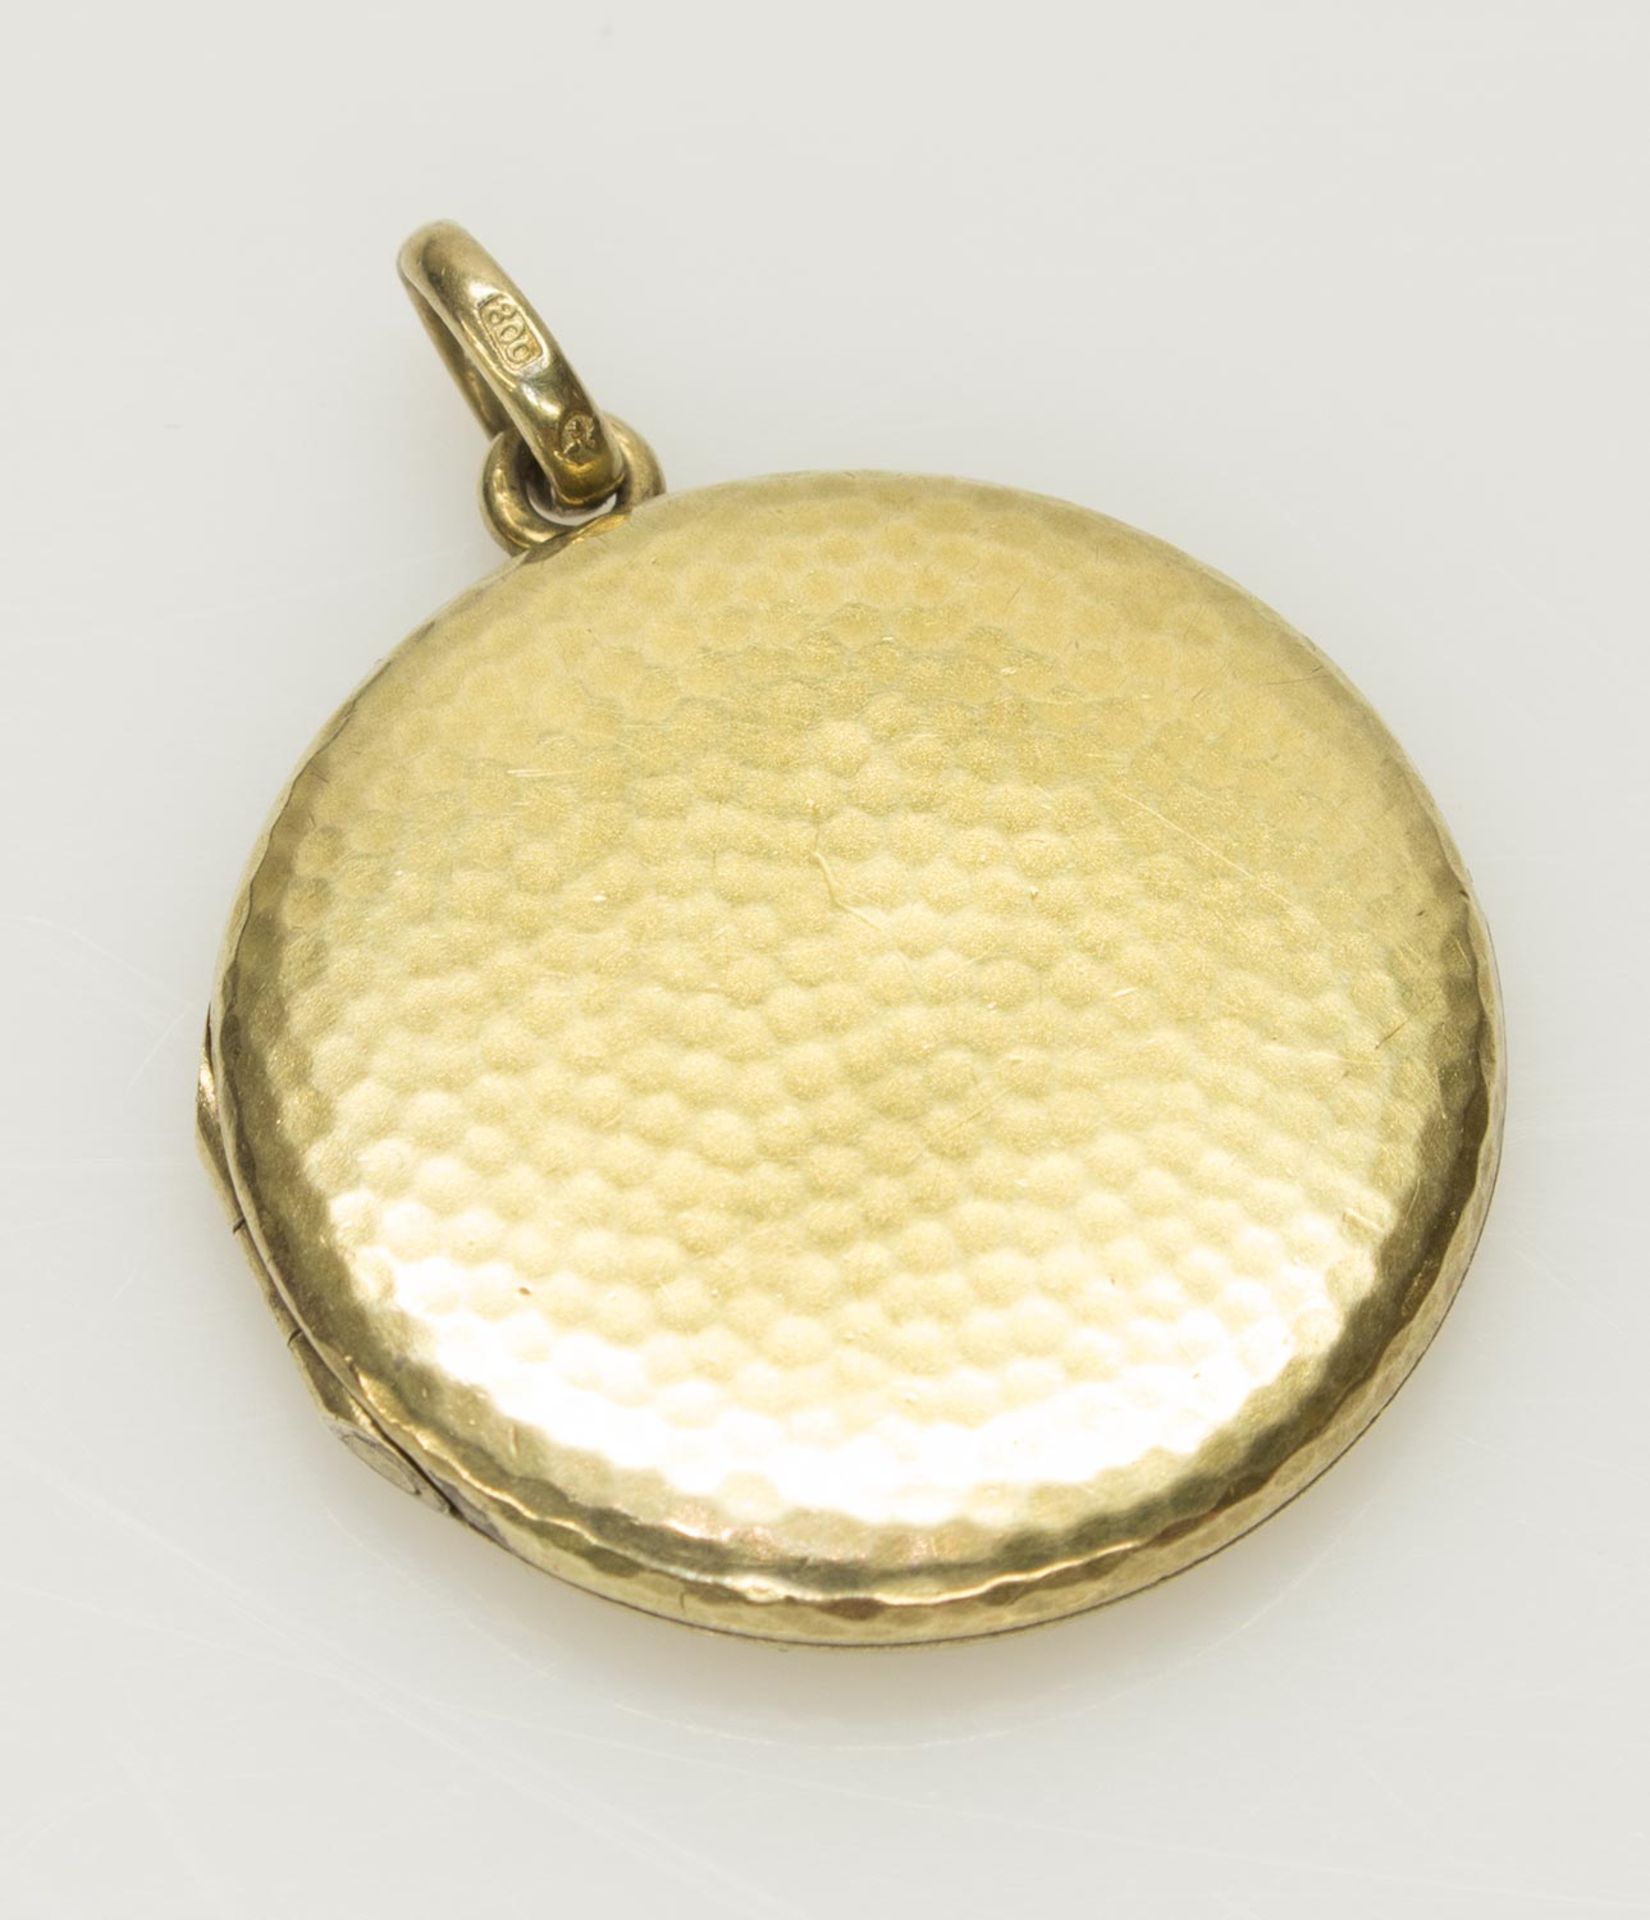 Kettenanhängerum 1900, 800er Silber vergoldet, 8,26 g, runde Form, Hammerschlagdekor, klappbar für 2